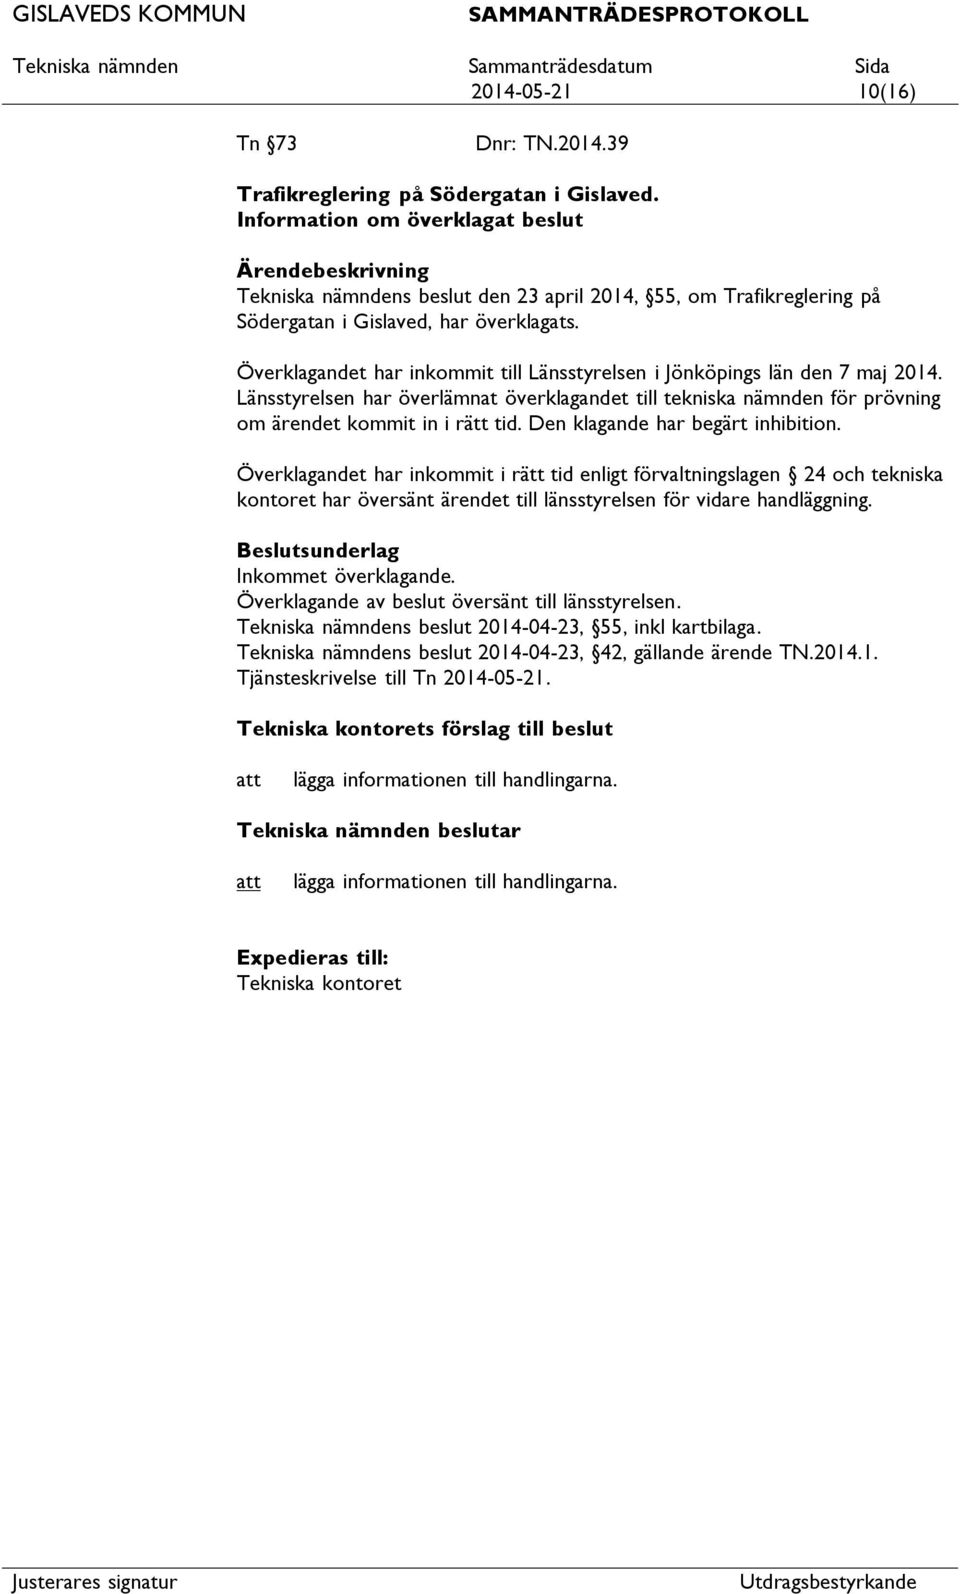 Överklagandet har inkommit till Länsstyrelsen i Jönköpings län den 7 maj 2014. Länsstyrelsen har överlämnat överklagandet till tekniska nämnden för prövning om ärendet kommit in i rätt tid.